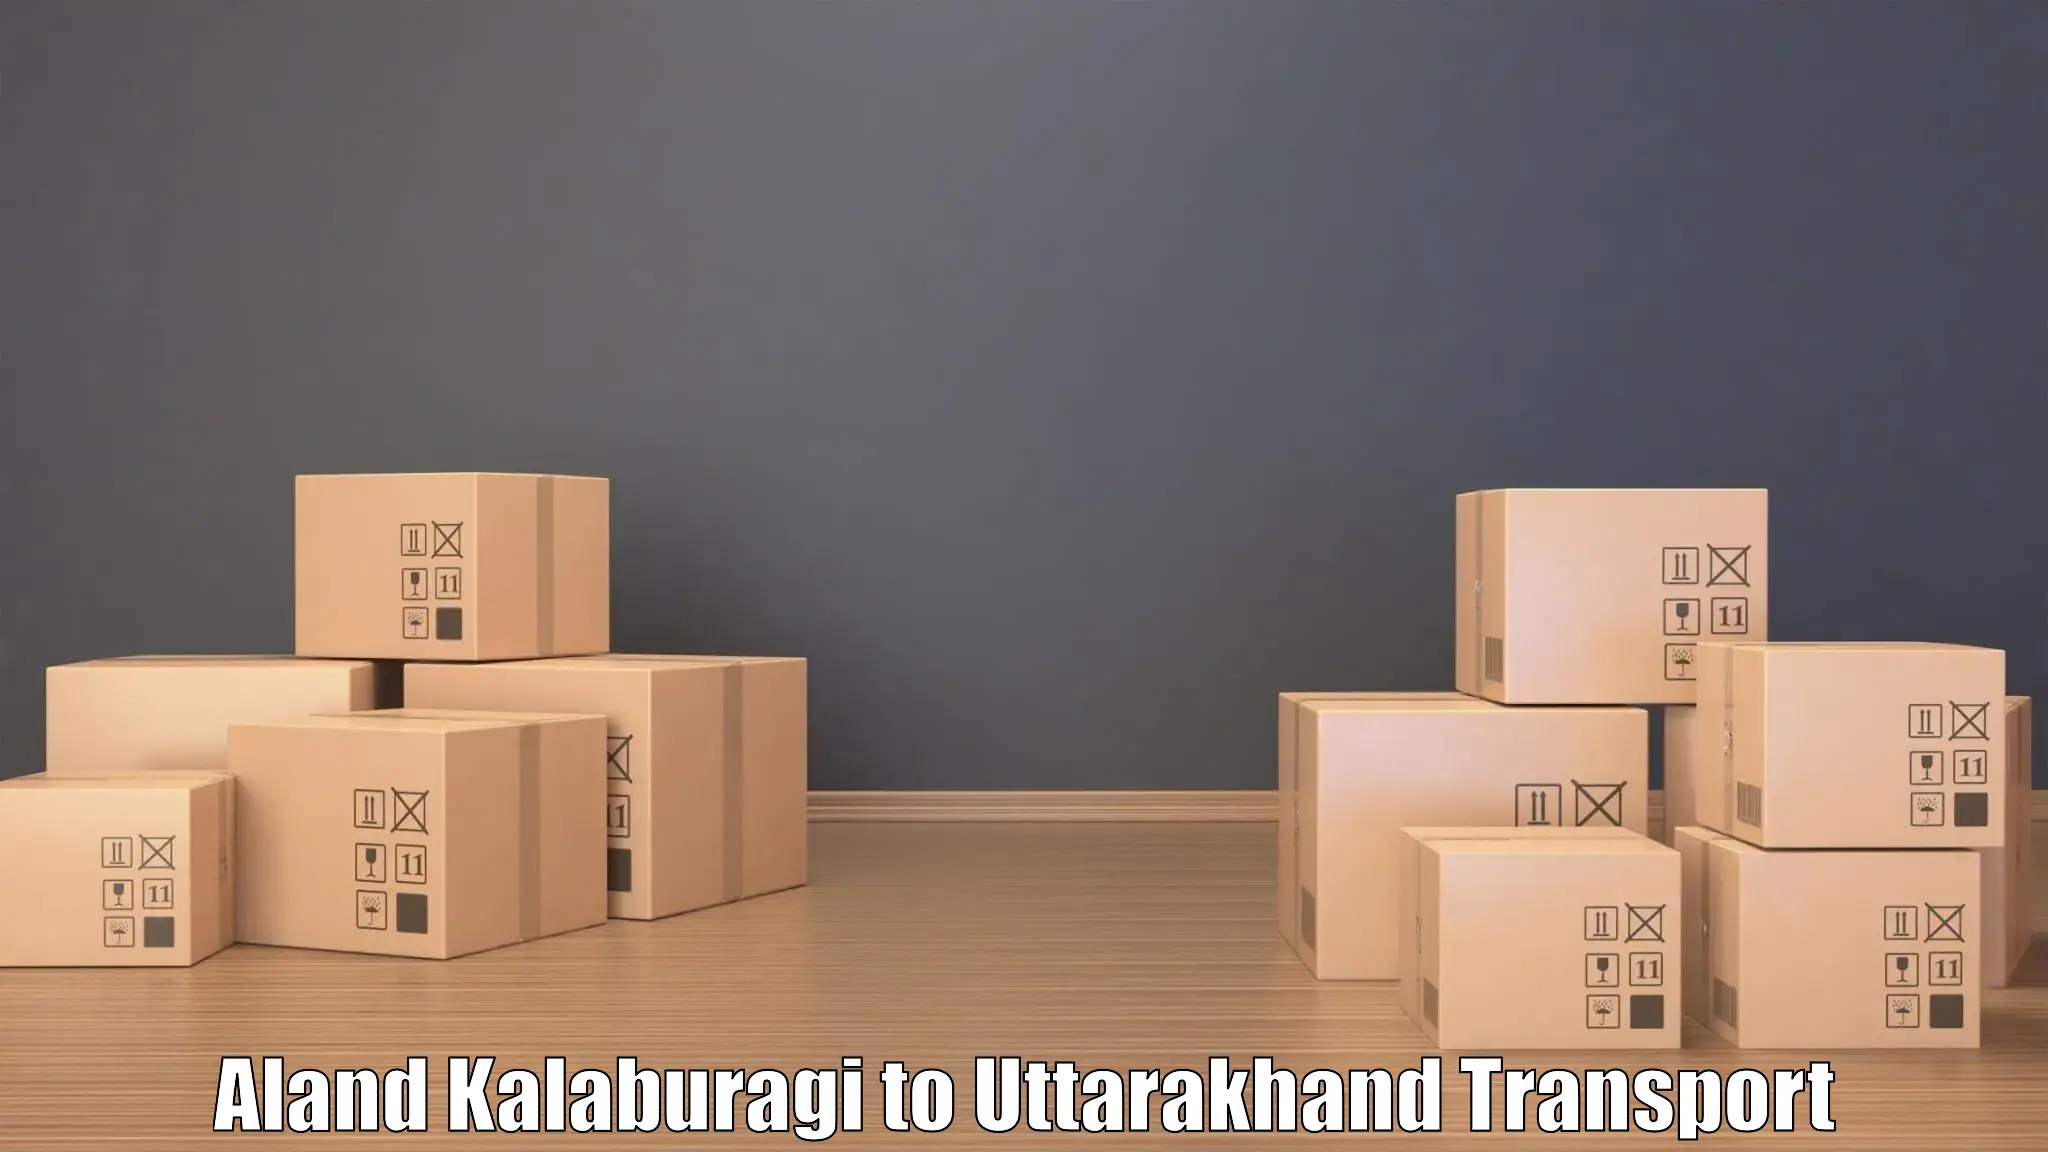 Cycle transportation service Aland Kalaburagi to Uttarakhand